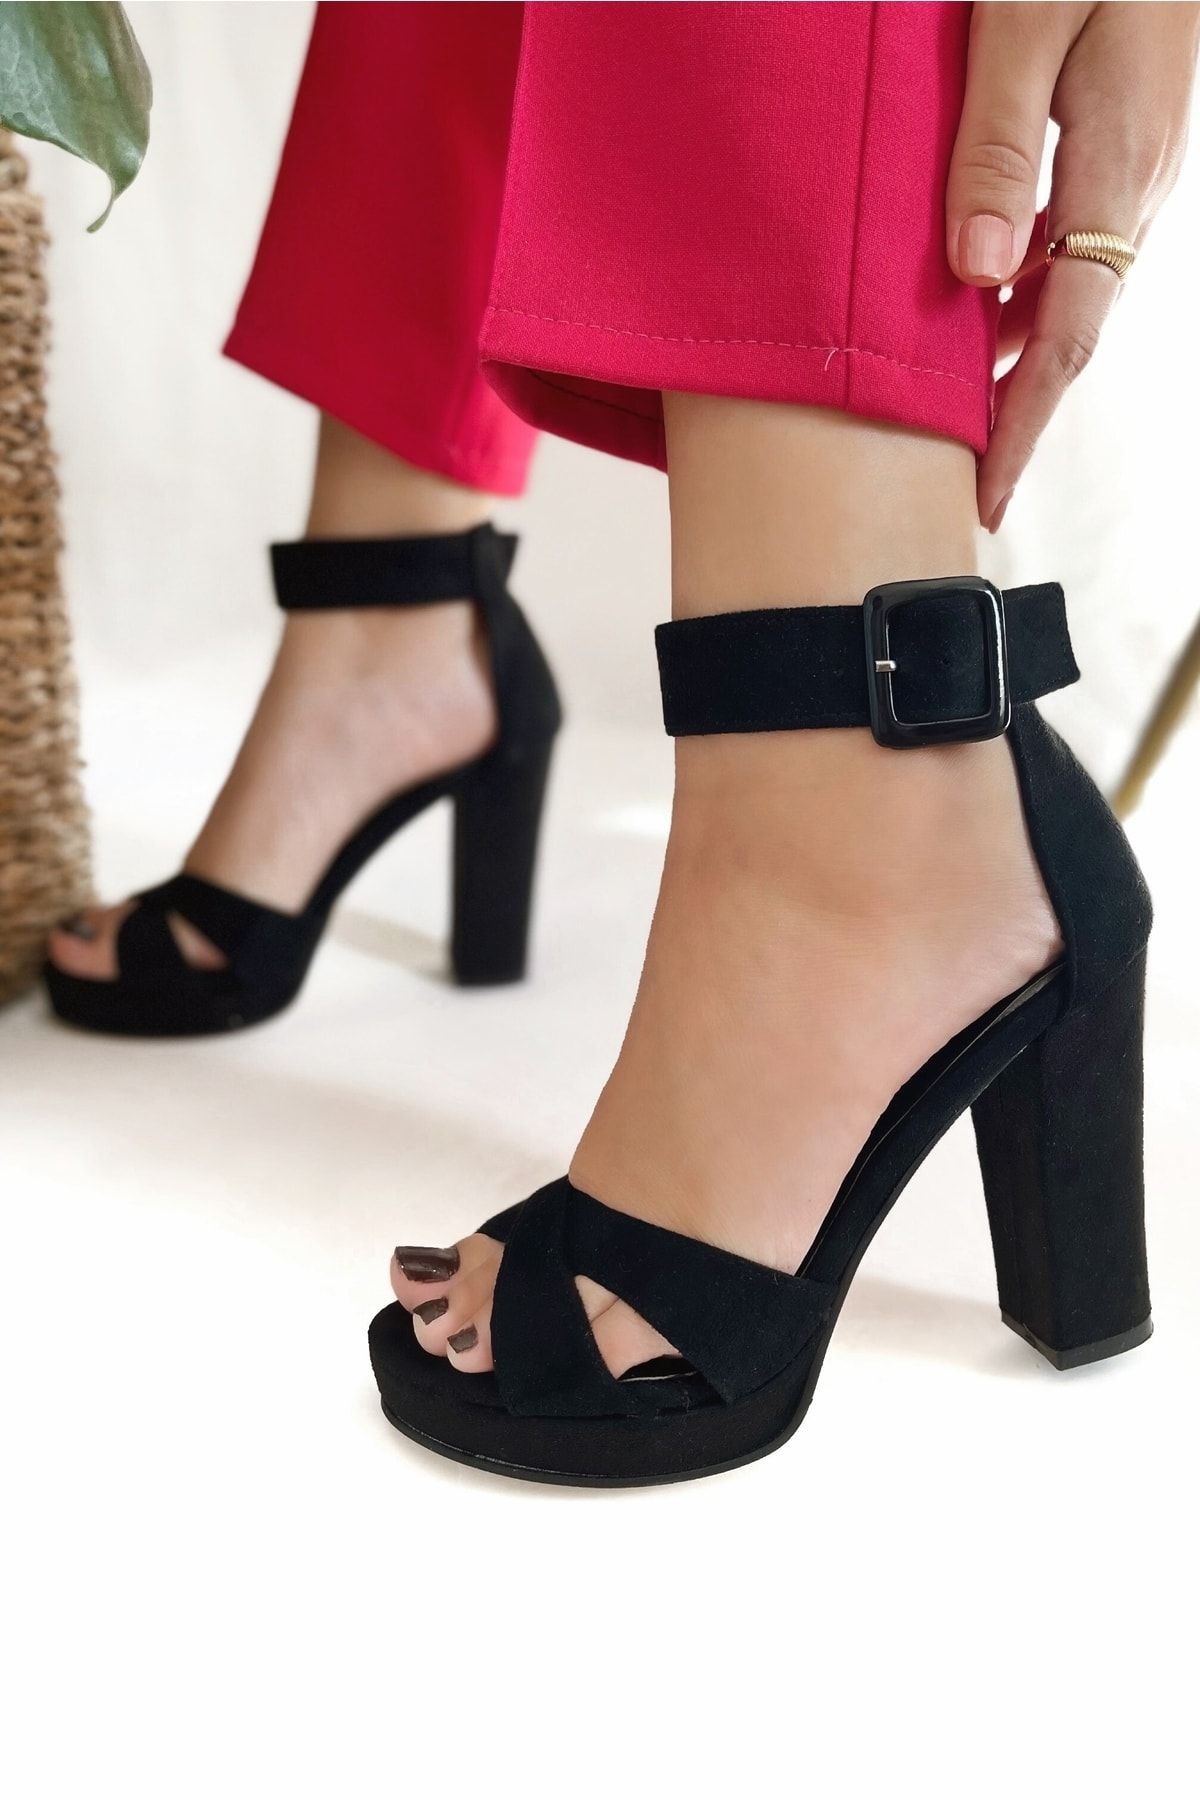 POLKA STORE Kadın Gloria Çapraz Bant Yüksek Kalın Topuklu Platformlu Süet Siyah Ayakkabı